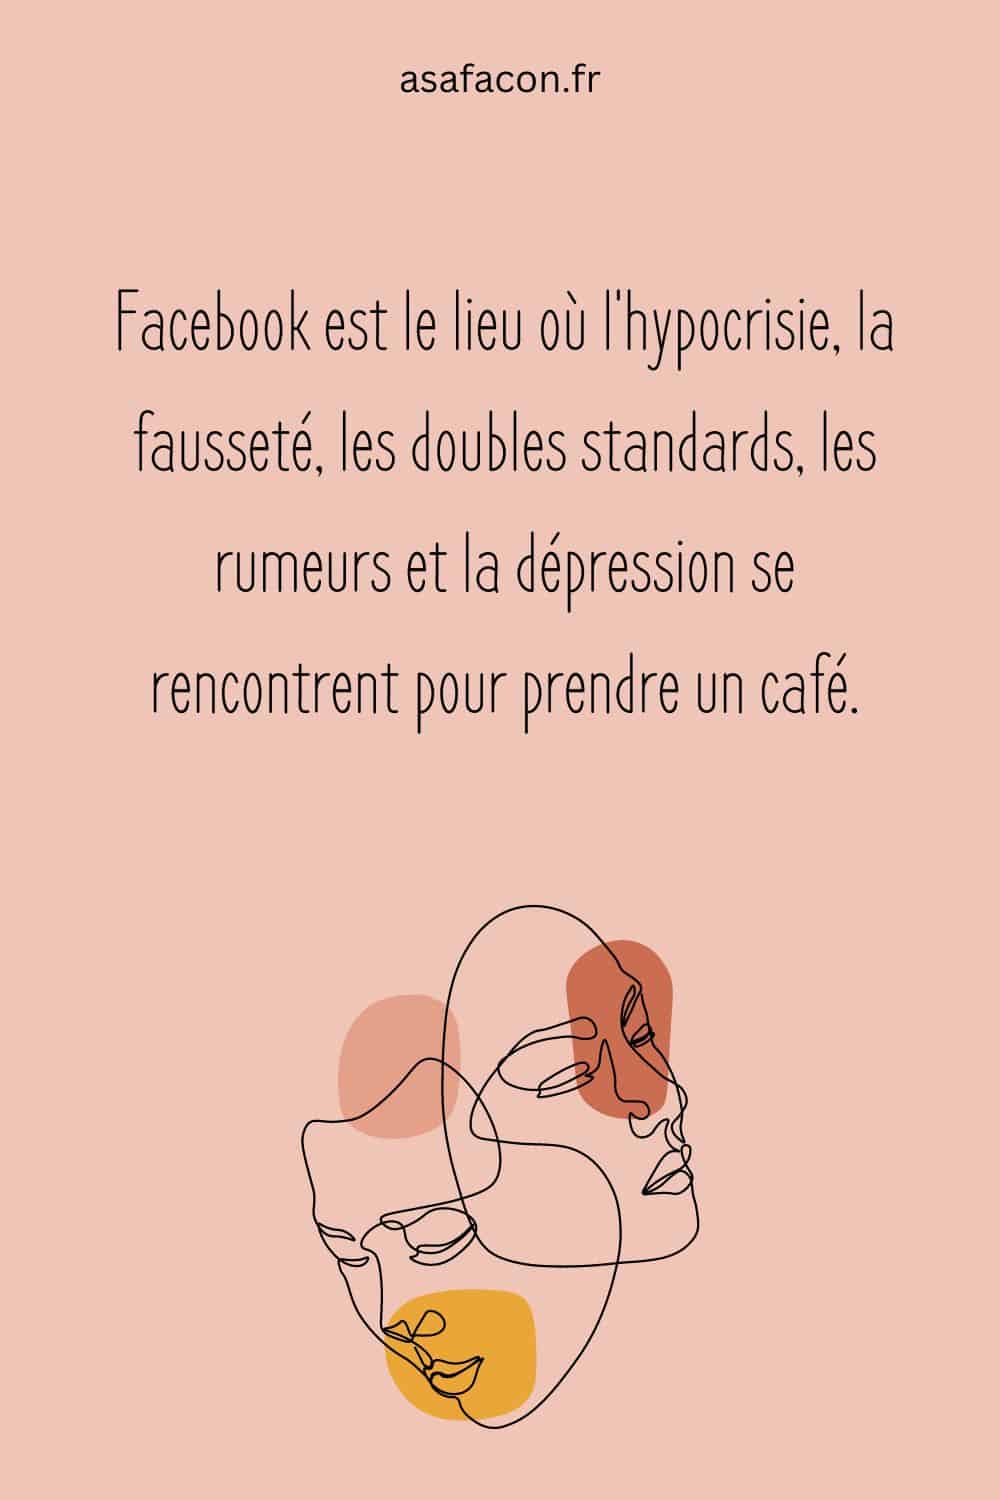 Facebook est le lieu où l'hypocrisie, la fausseté, les doubles standards, les rumeurs et la dépression se rencontrent pour prendre un café.